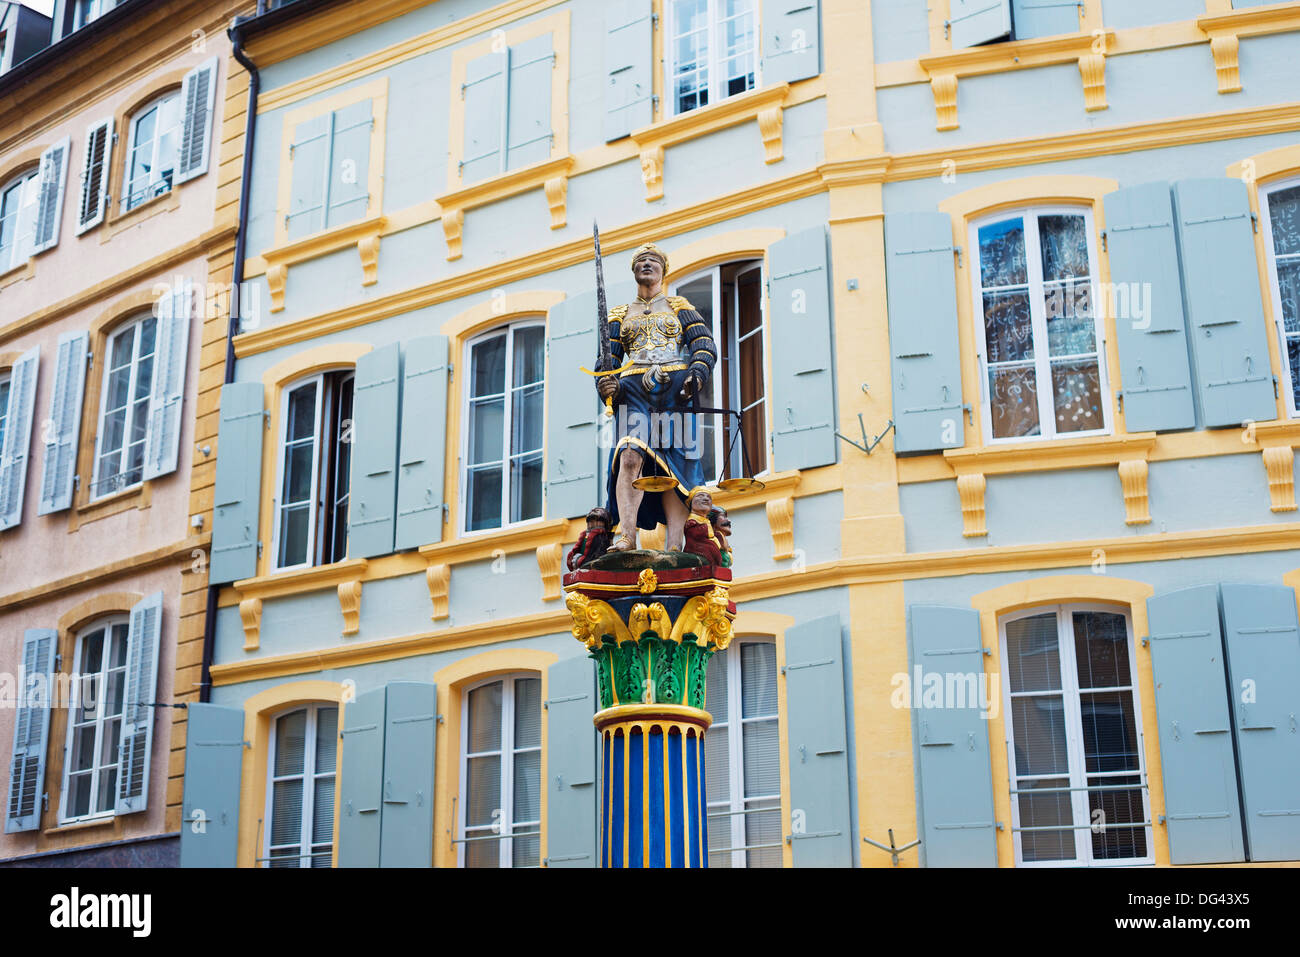 Justiz-Statue im mittelalterlichen alten Stadt Platz, Neuchatel, Schweiz, Europa Stockfoto